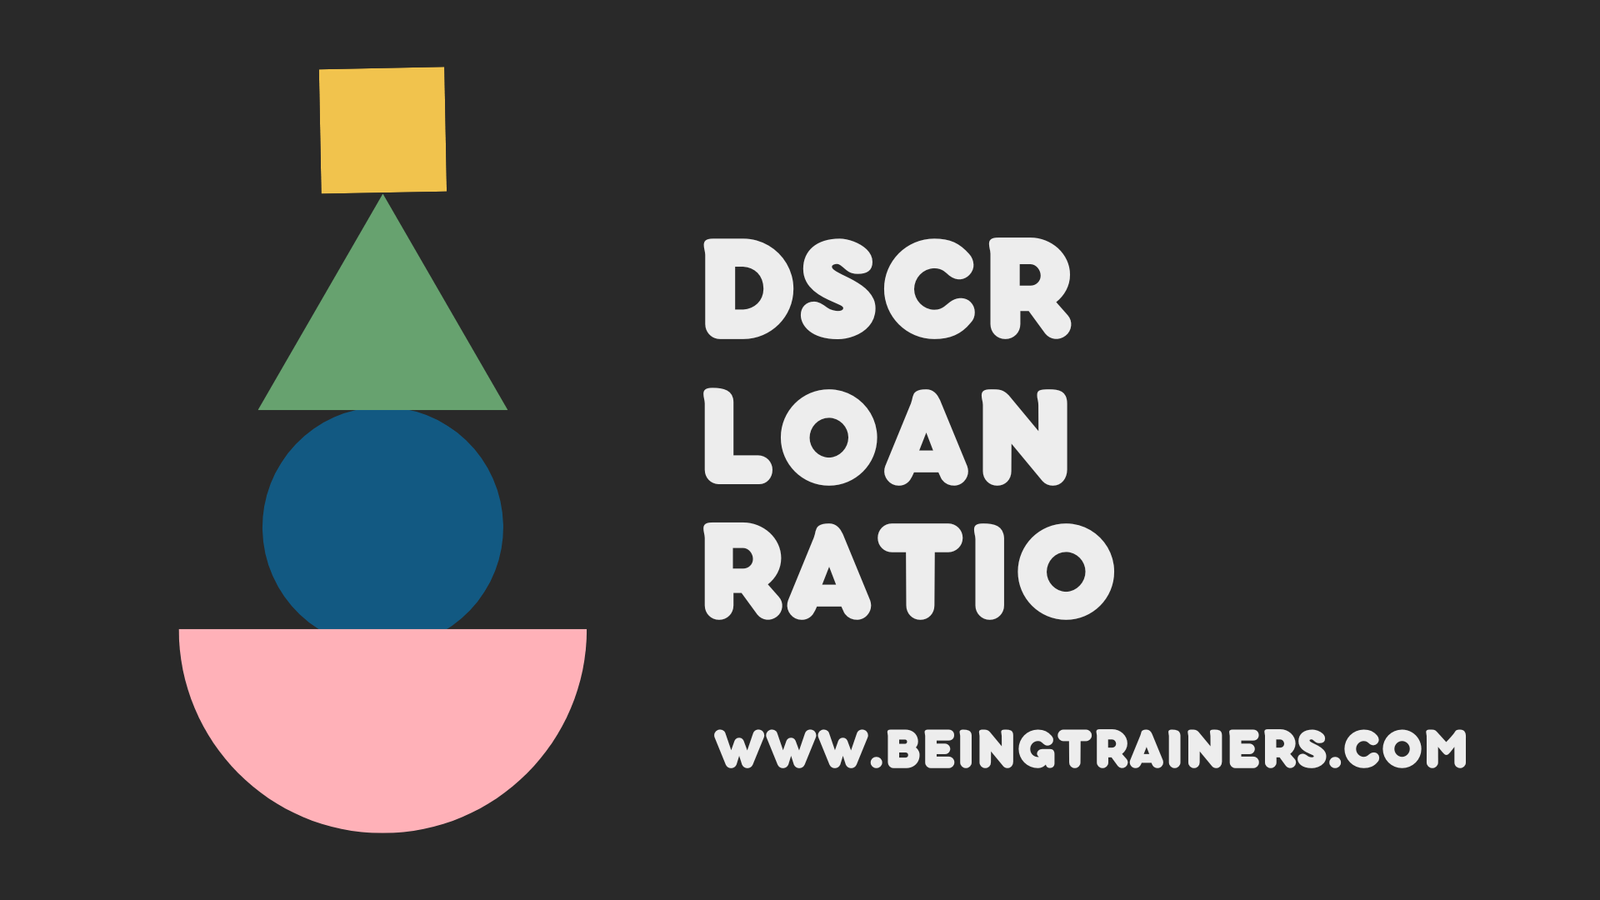 DSCR Loan